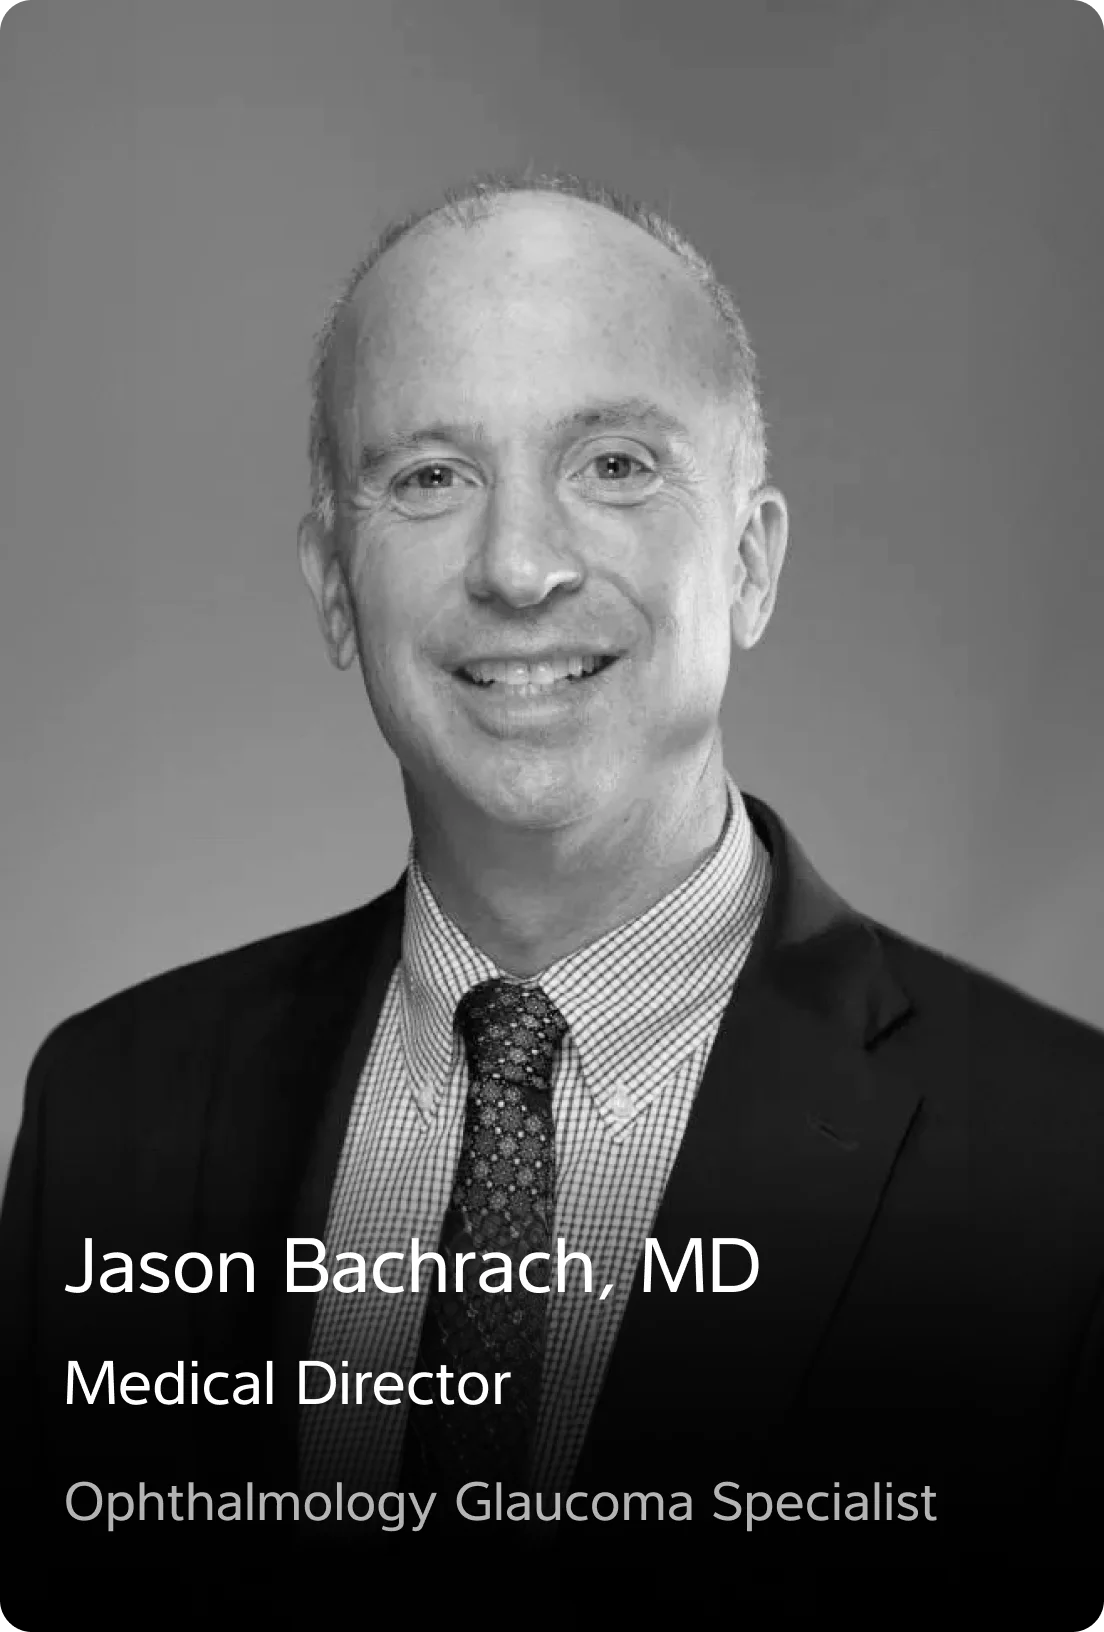 Jason Bachrach, MD